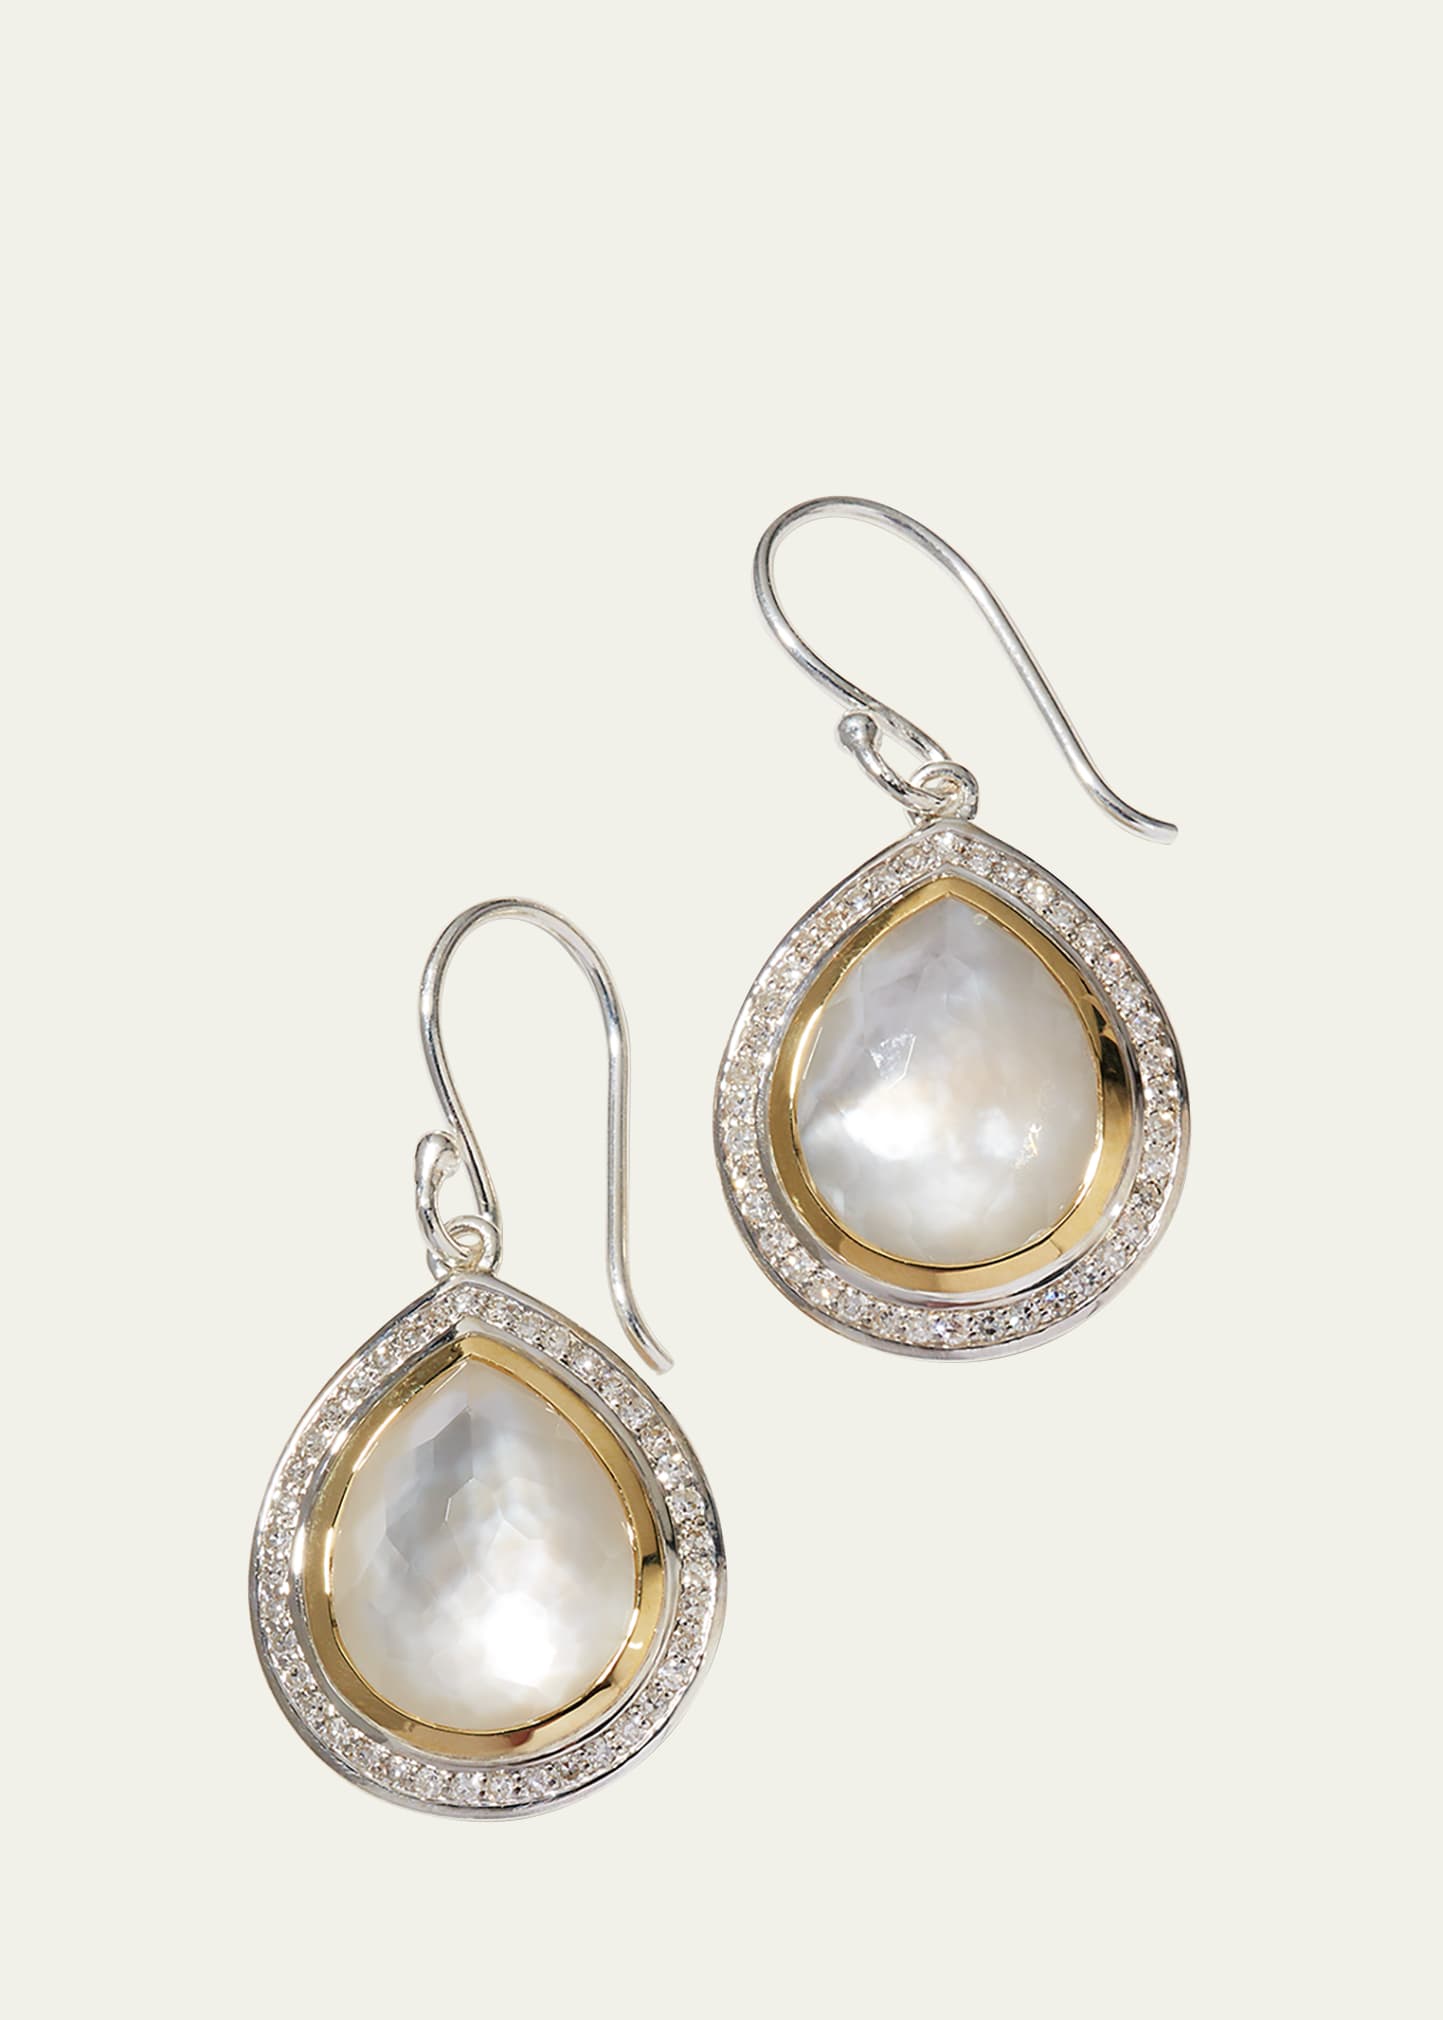 Teardrop Earrings in Chimera with Diamonds